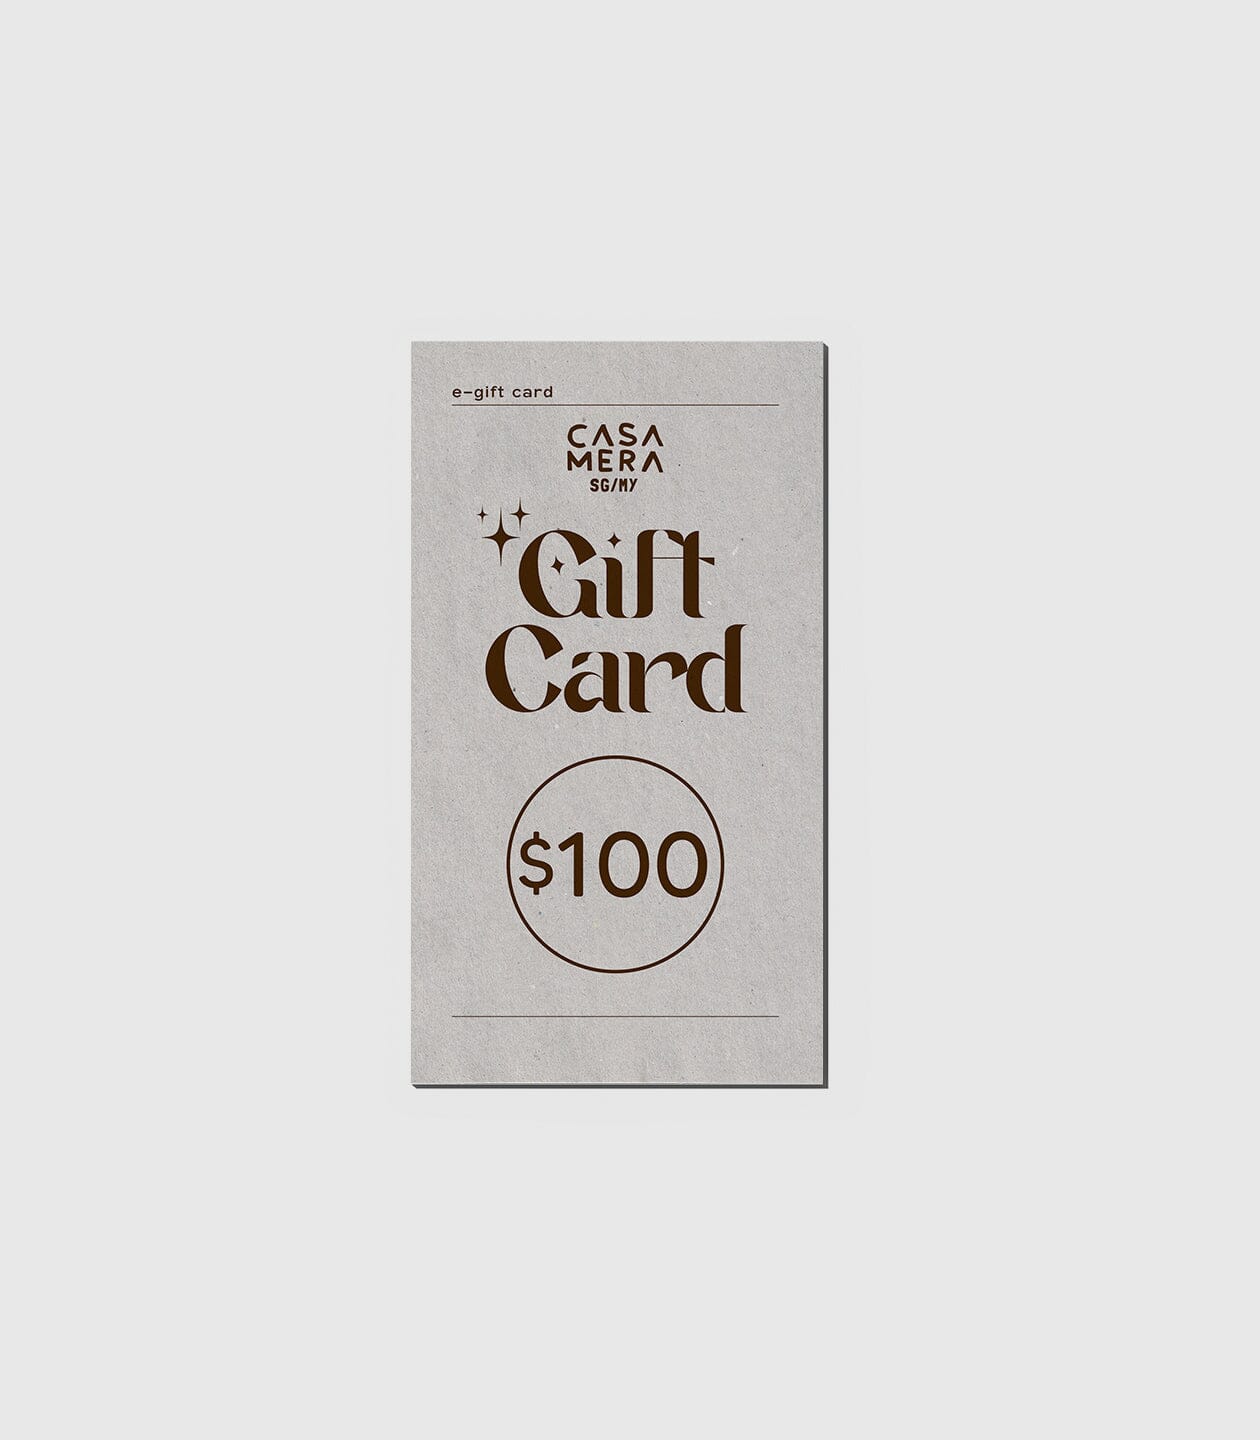 Gift Card casamerasg $100.00 